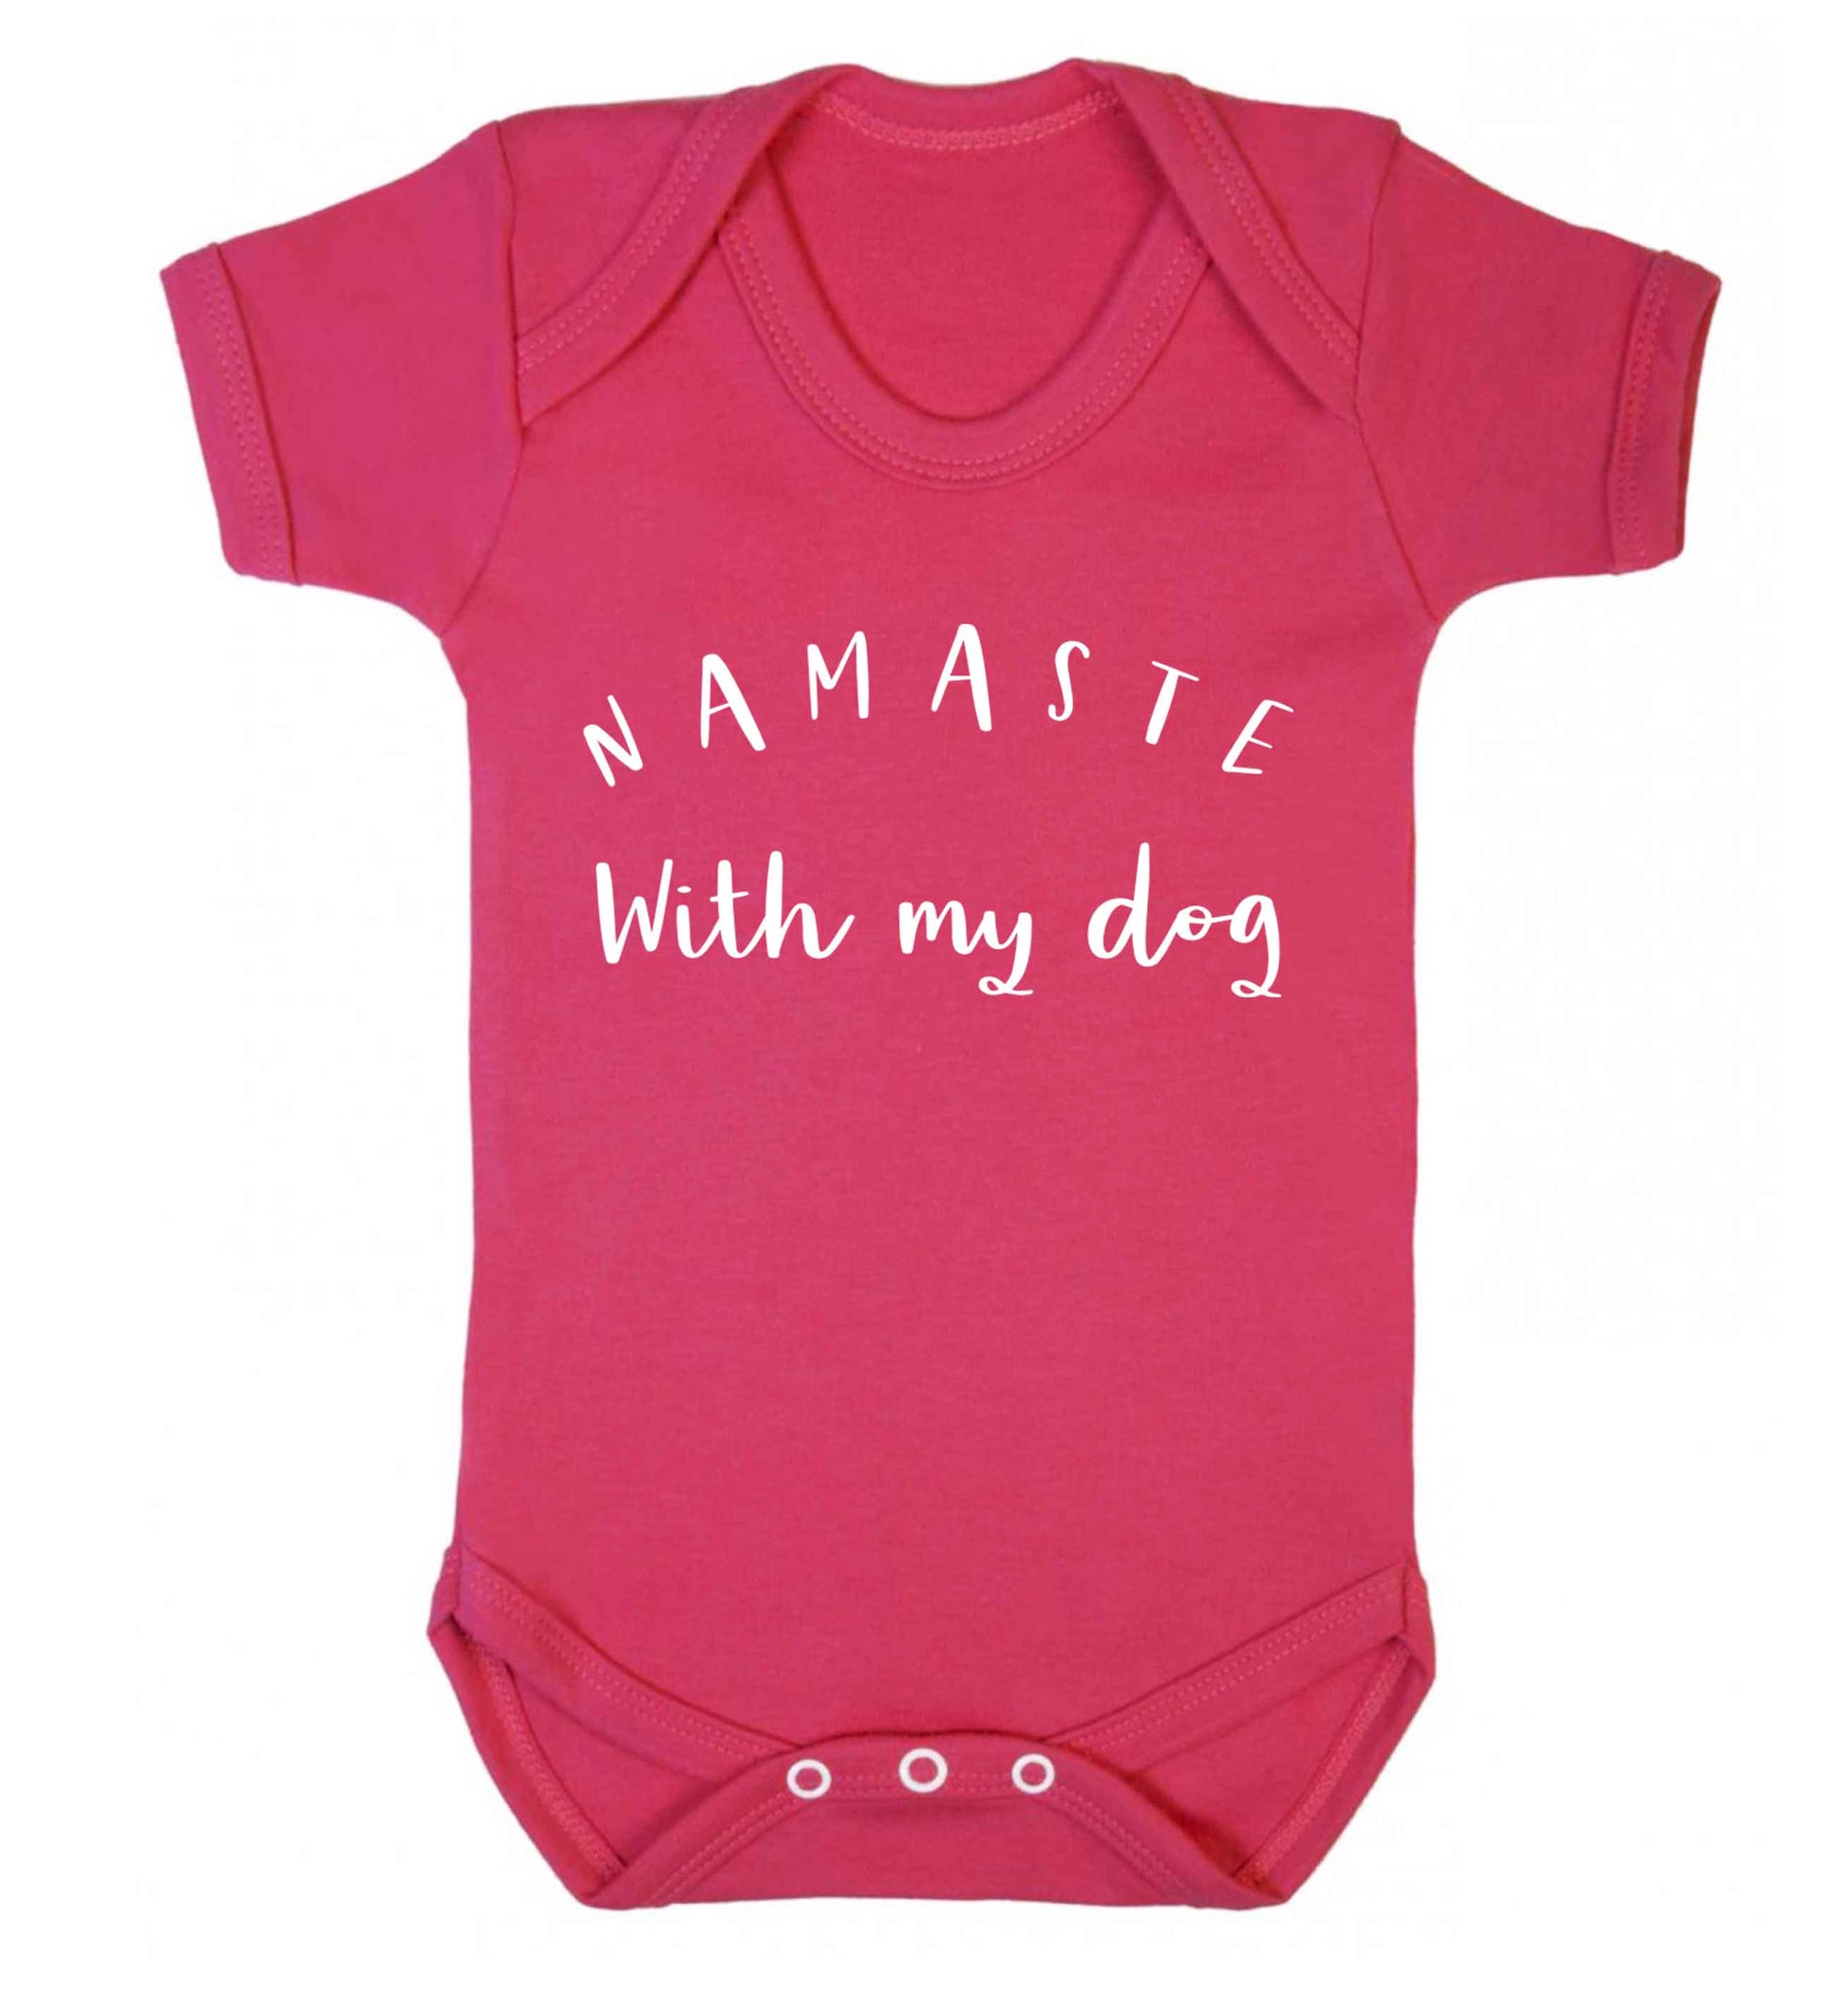 Namaste with my dog Baby Vest dark pink 18-24 months